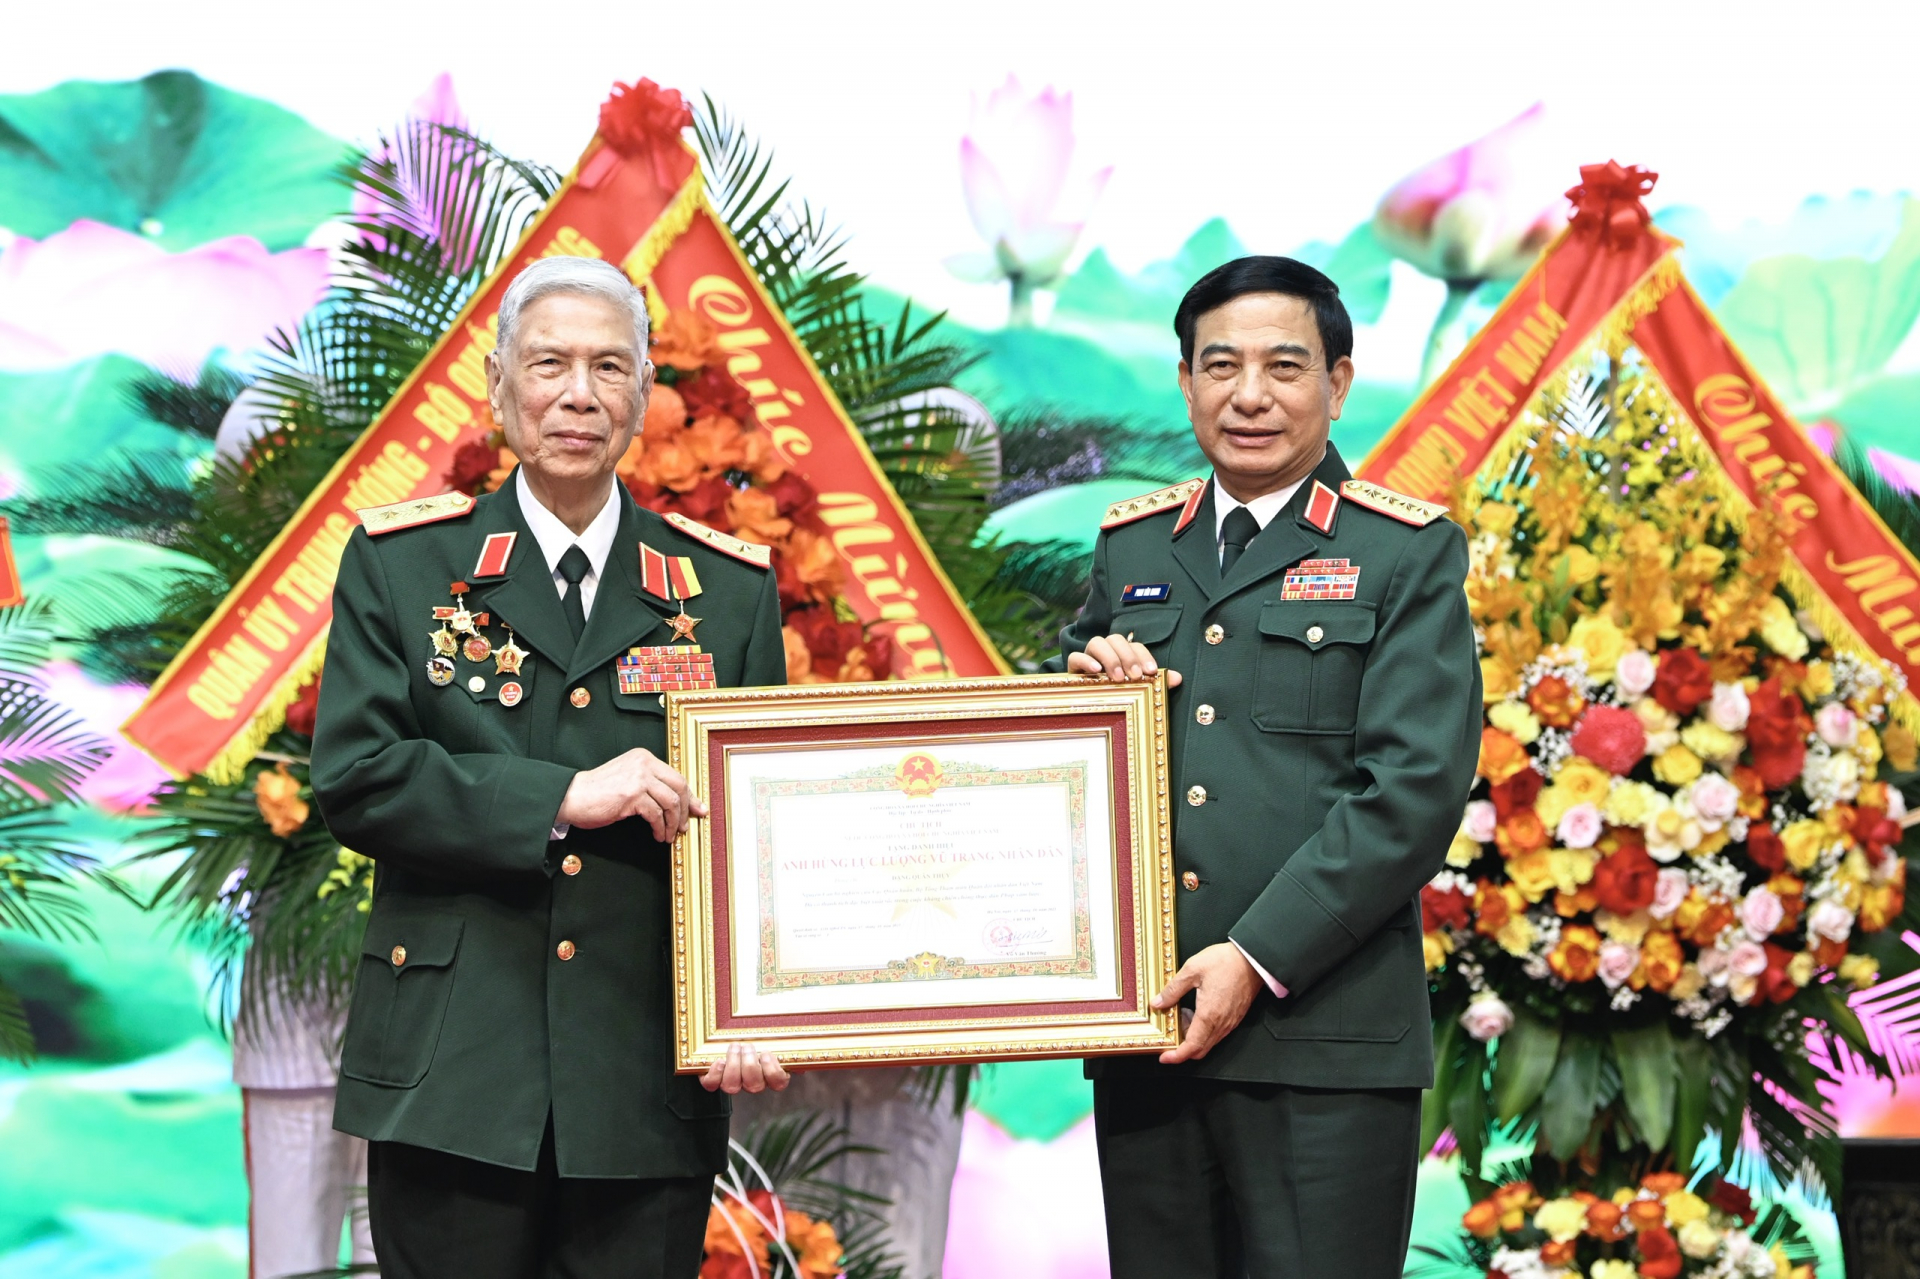 Bộ Tổng Tham mưu QĐND Việt Nam tổ chức Lễ trao tặng danh hiệu Anh hùng Lực lượng vũ trang Nhân dân đối với Trung tướng Đặng Quân Thụy